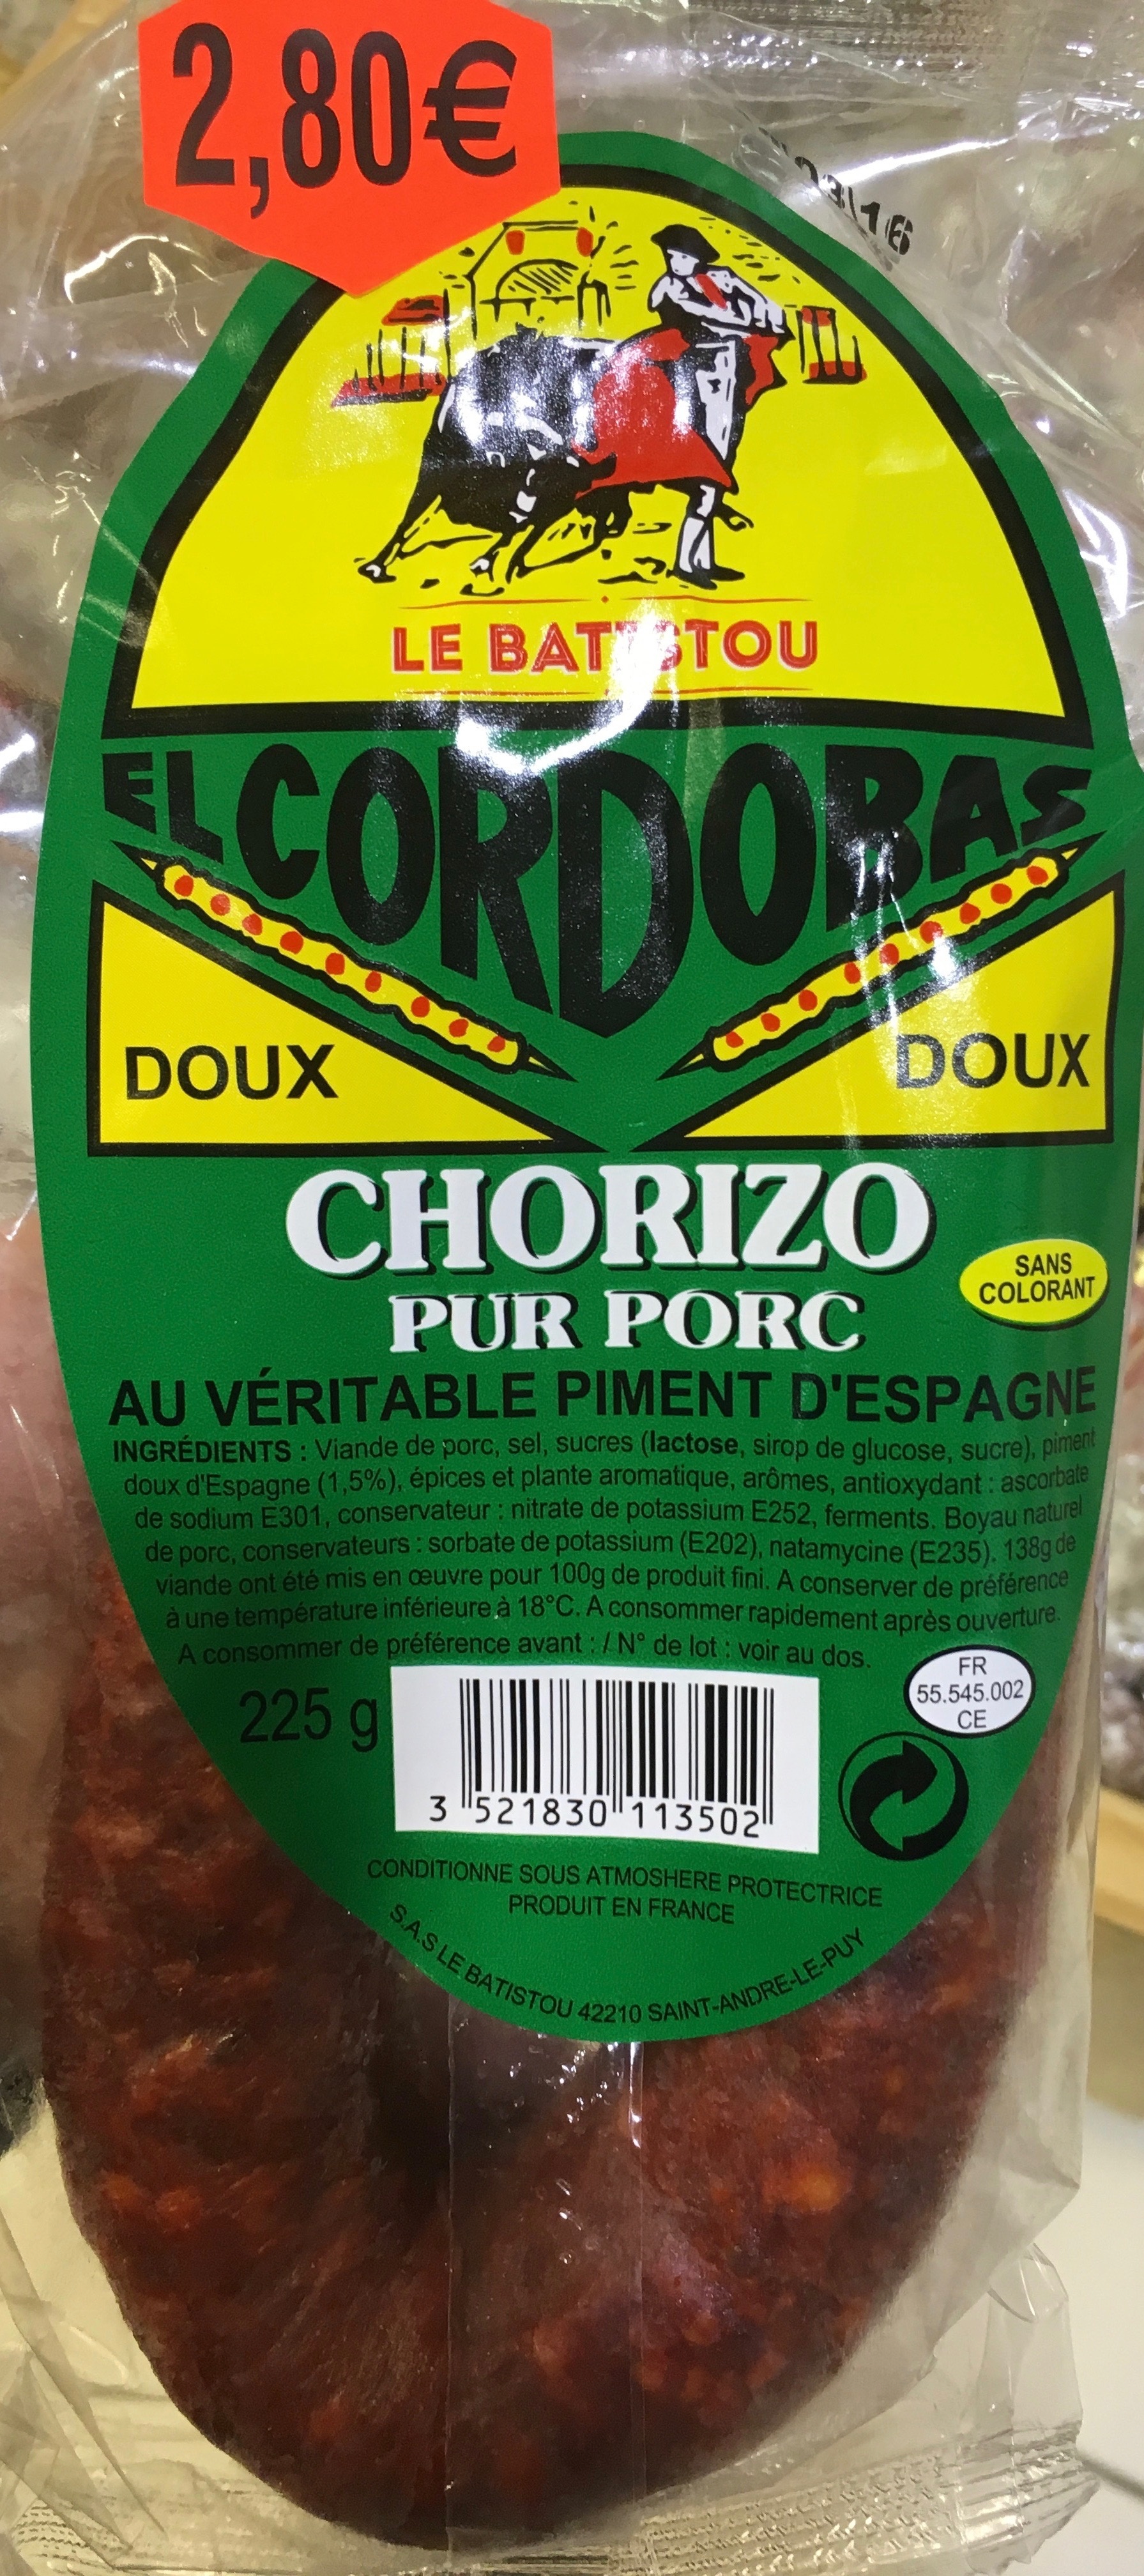 Chorizo pur porc doux au véritable piment d'Espagne - Product - fr